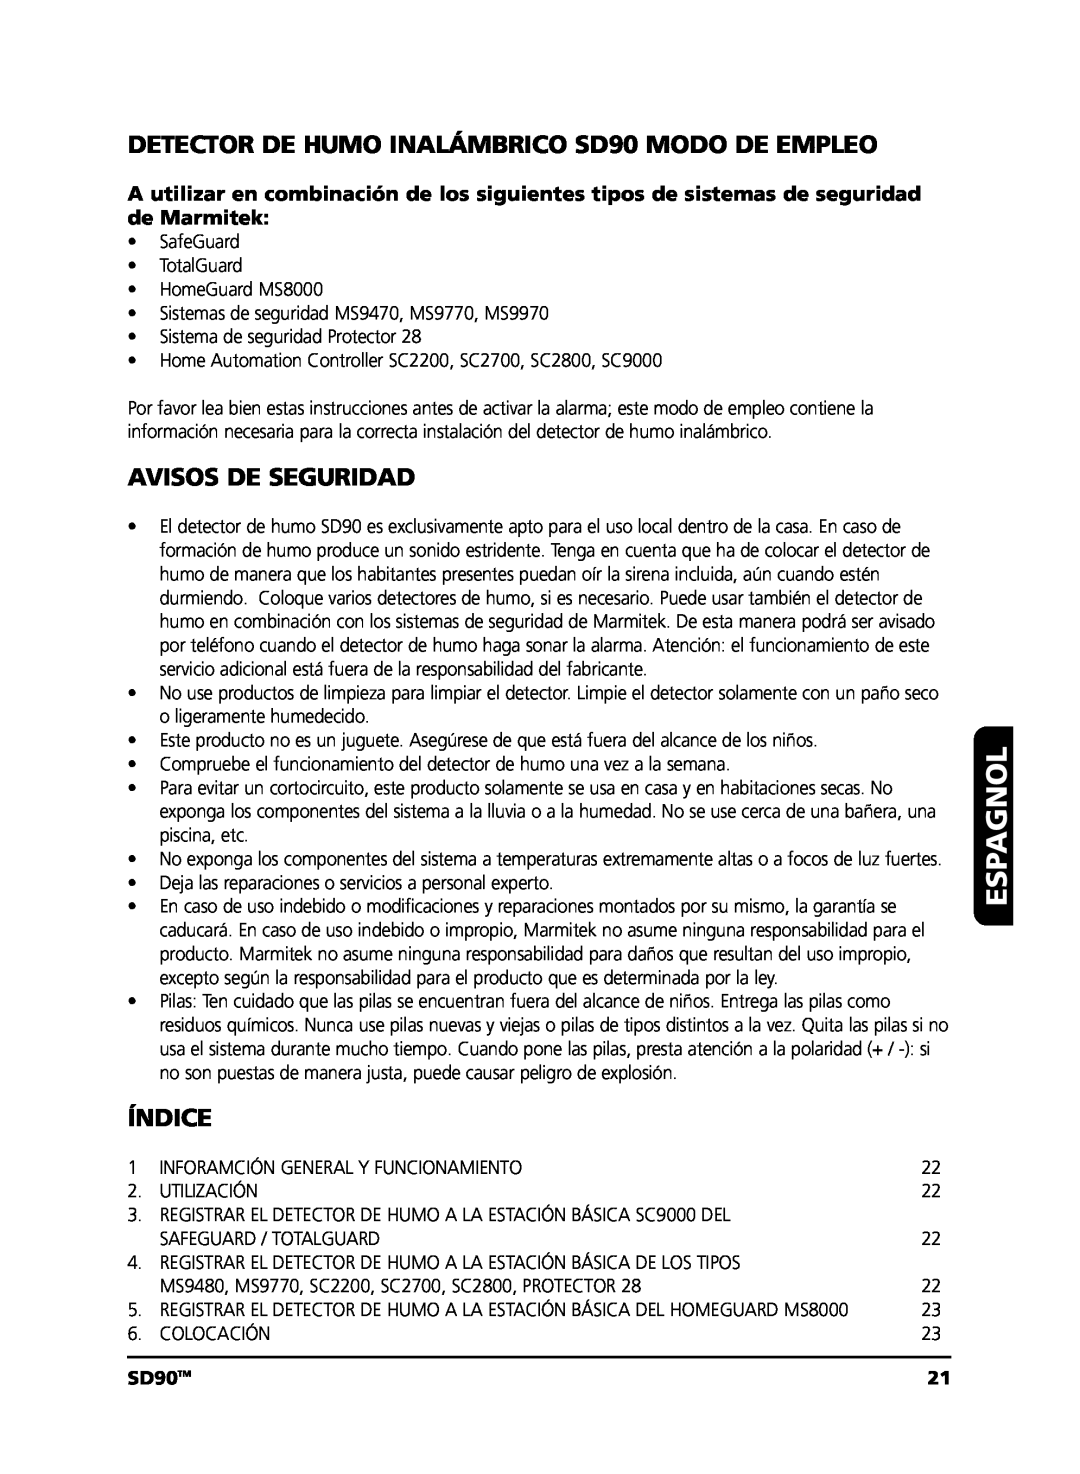 Marmitek user manual Espagnol, DETECTOR DE HUMO INALÁMBRICO SD90 MODO DE EMPLEO, Avisos De Seguridad, Índice, SD90TM 